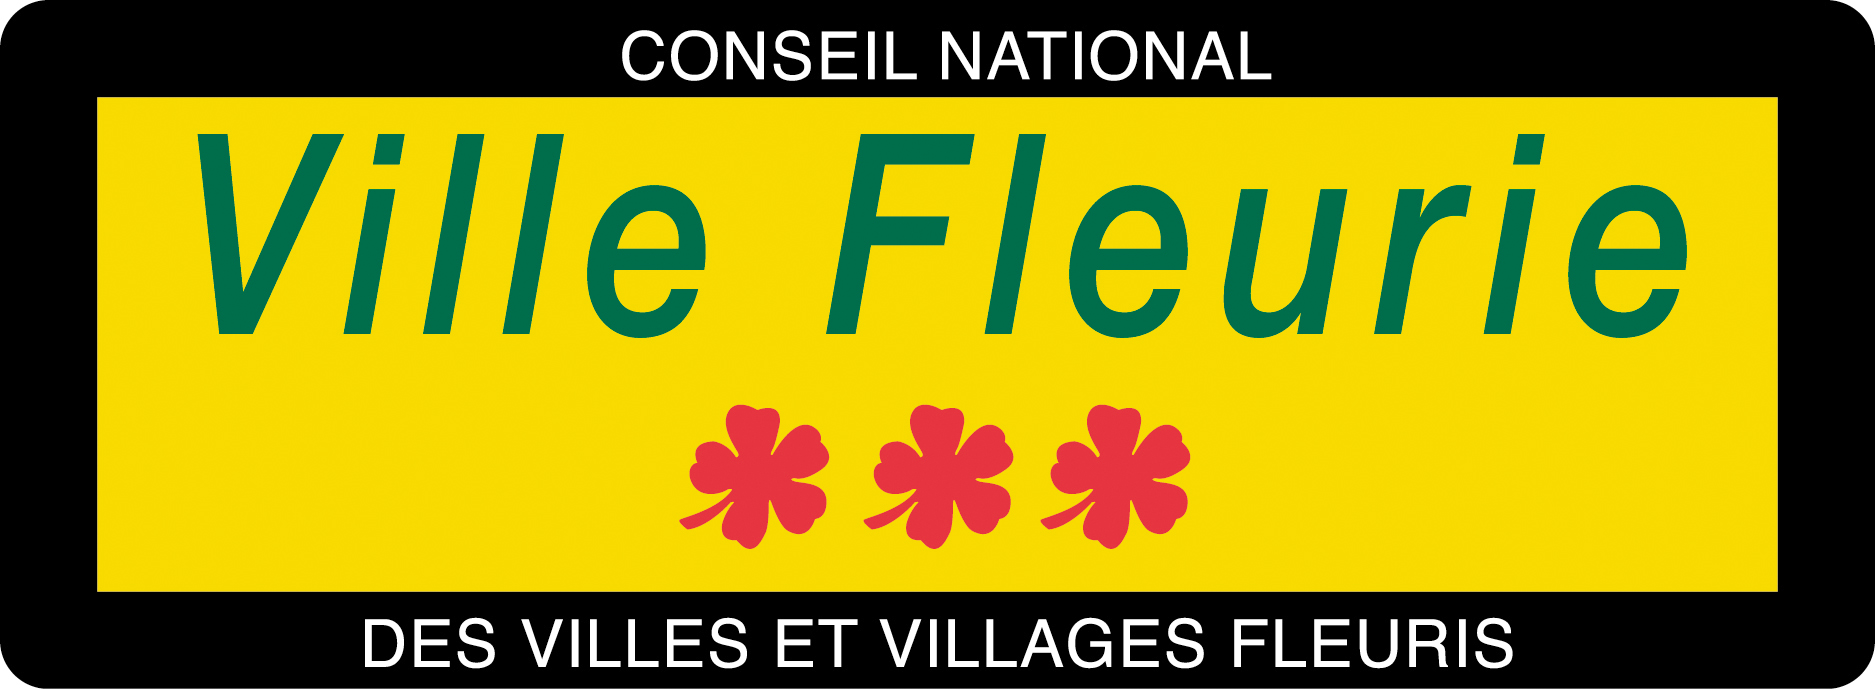 Label Panneau Ville Fleurie 3 fleurs